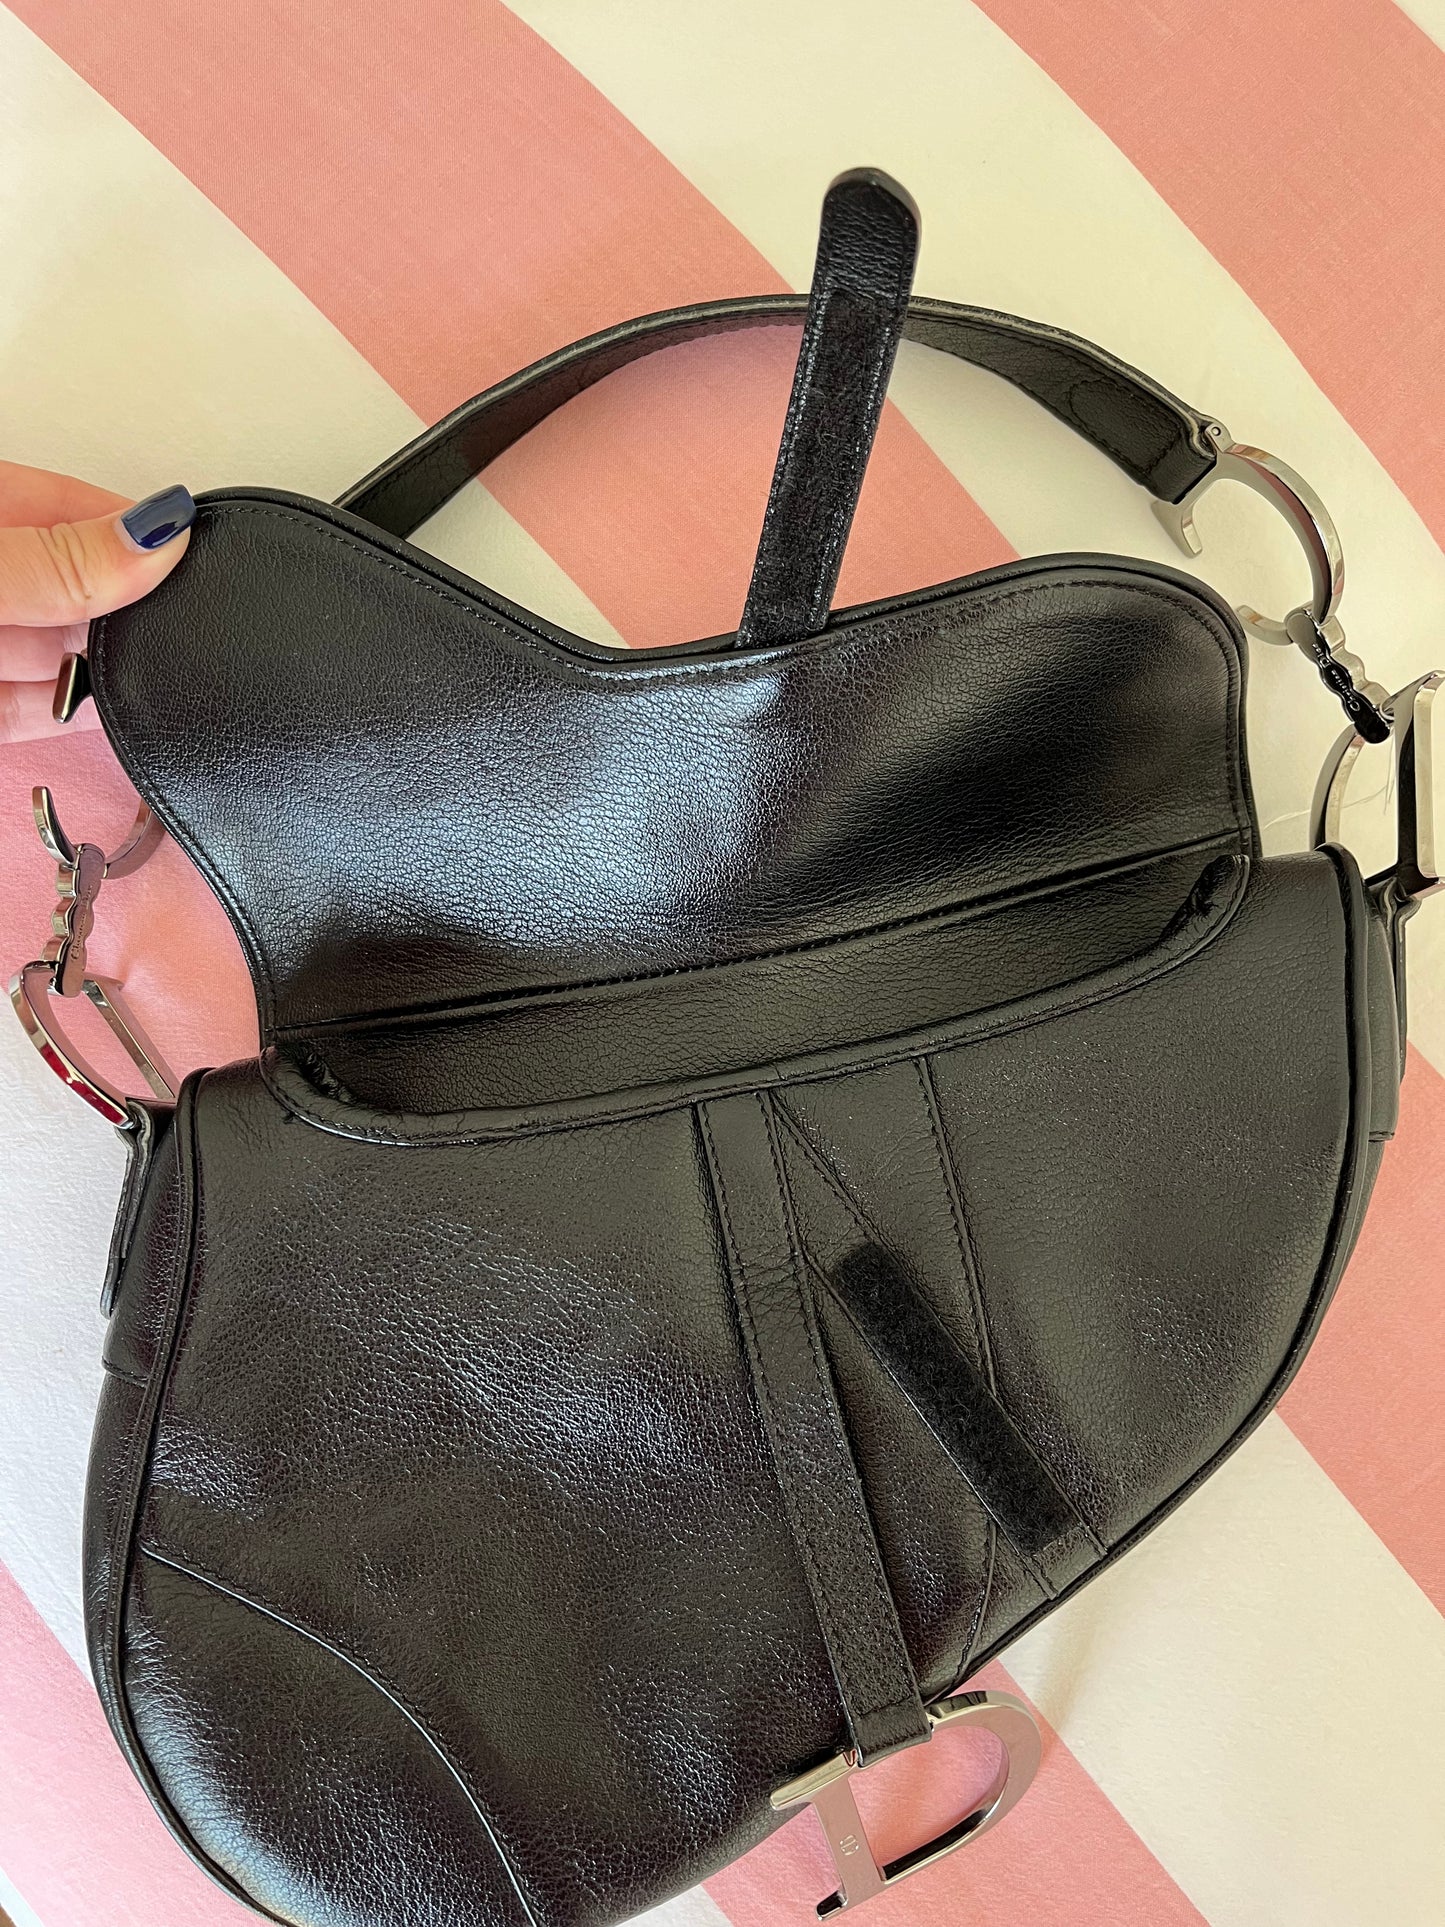 Dior vintage black saddle leather bag